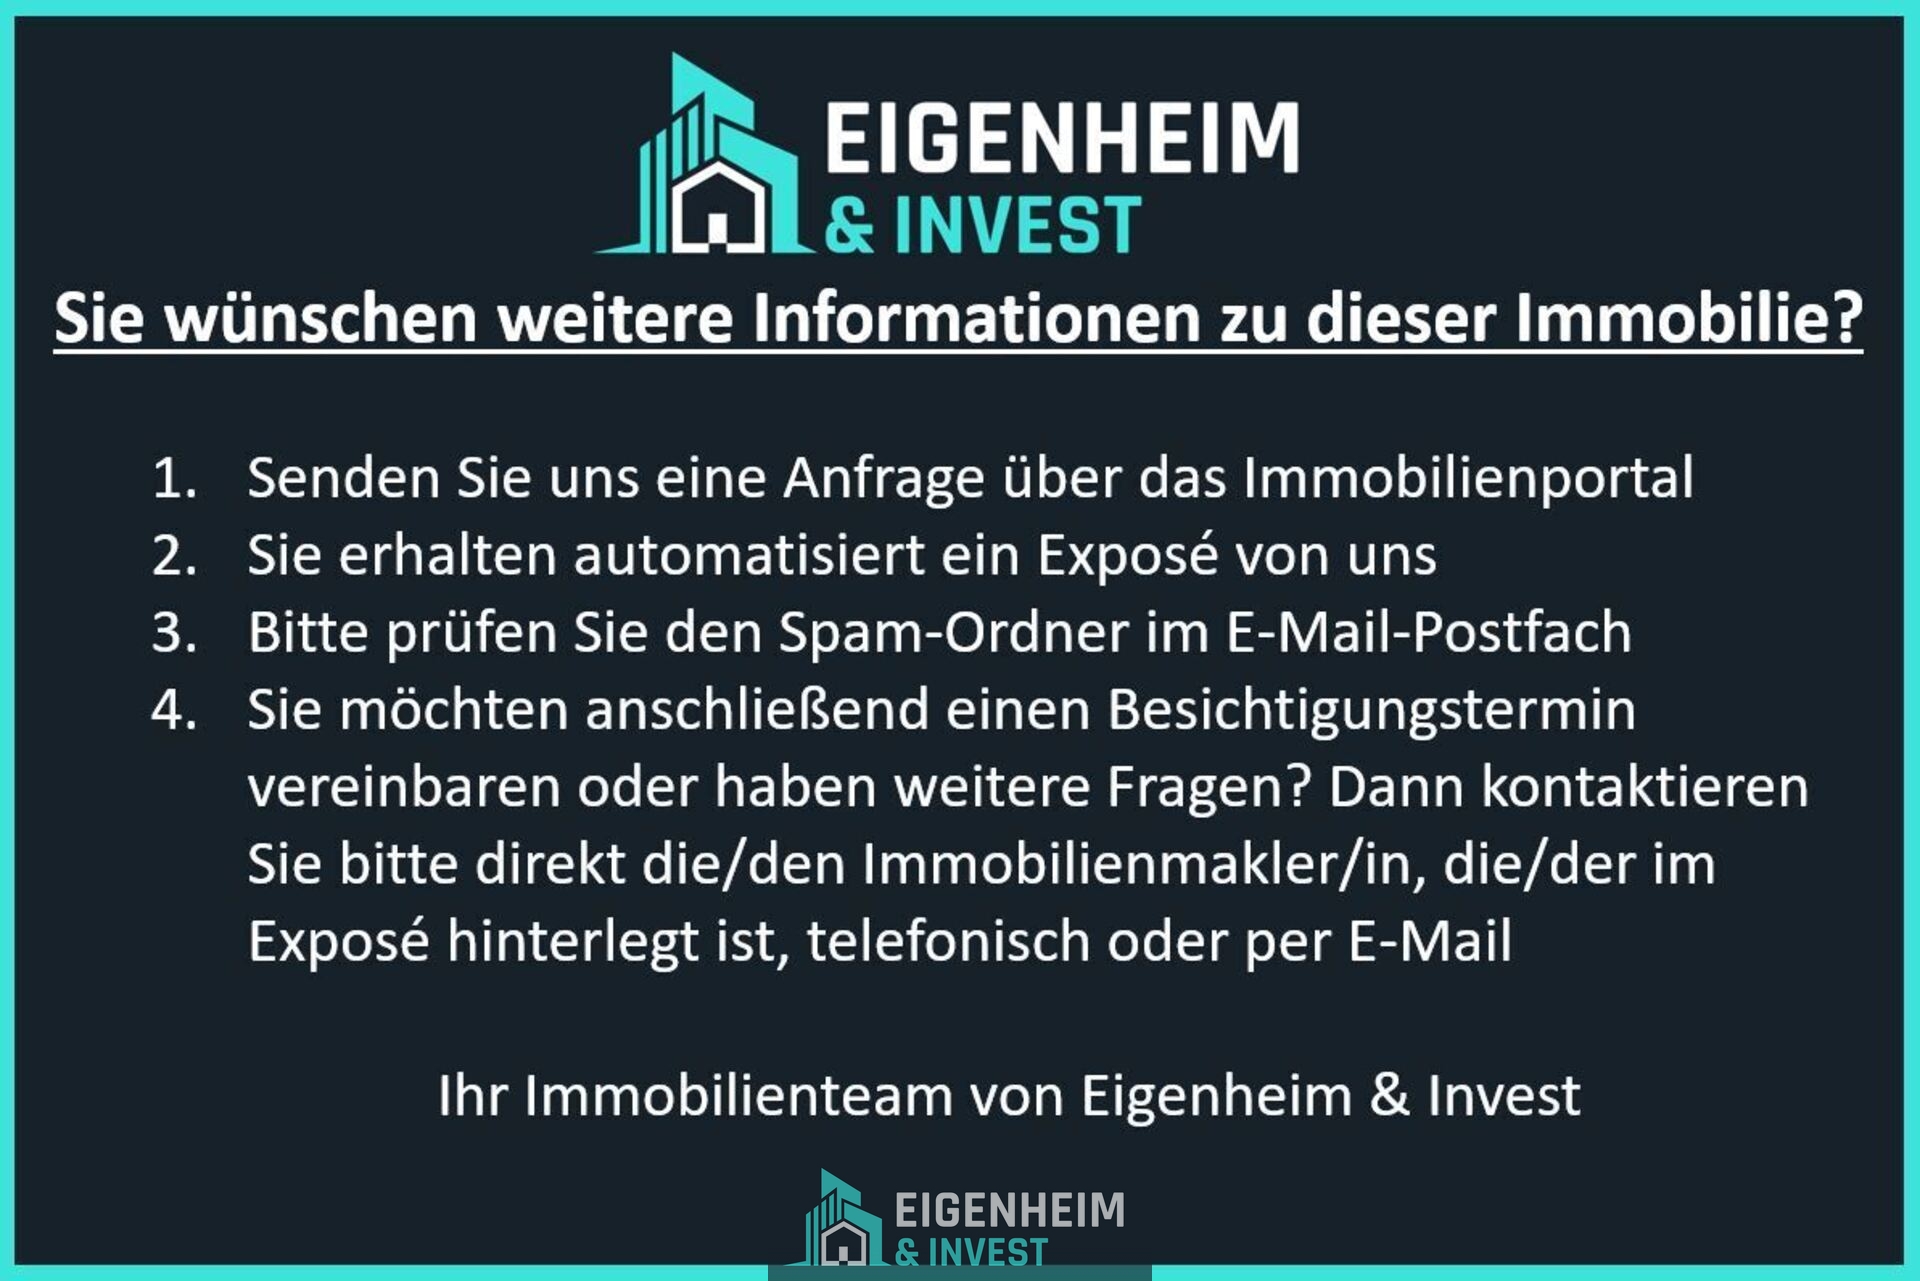 Ihr Team von Eigenheim & Invest 1_142508